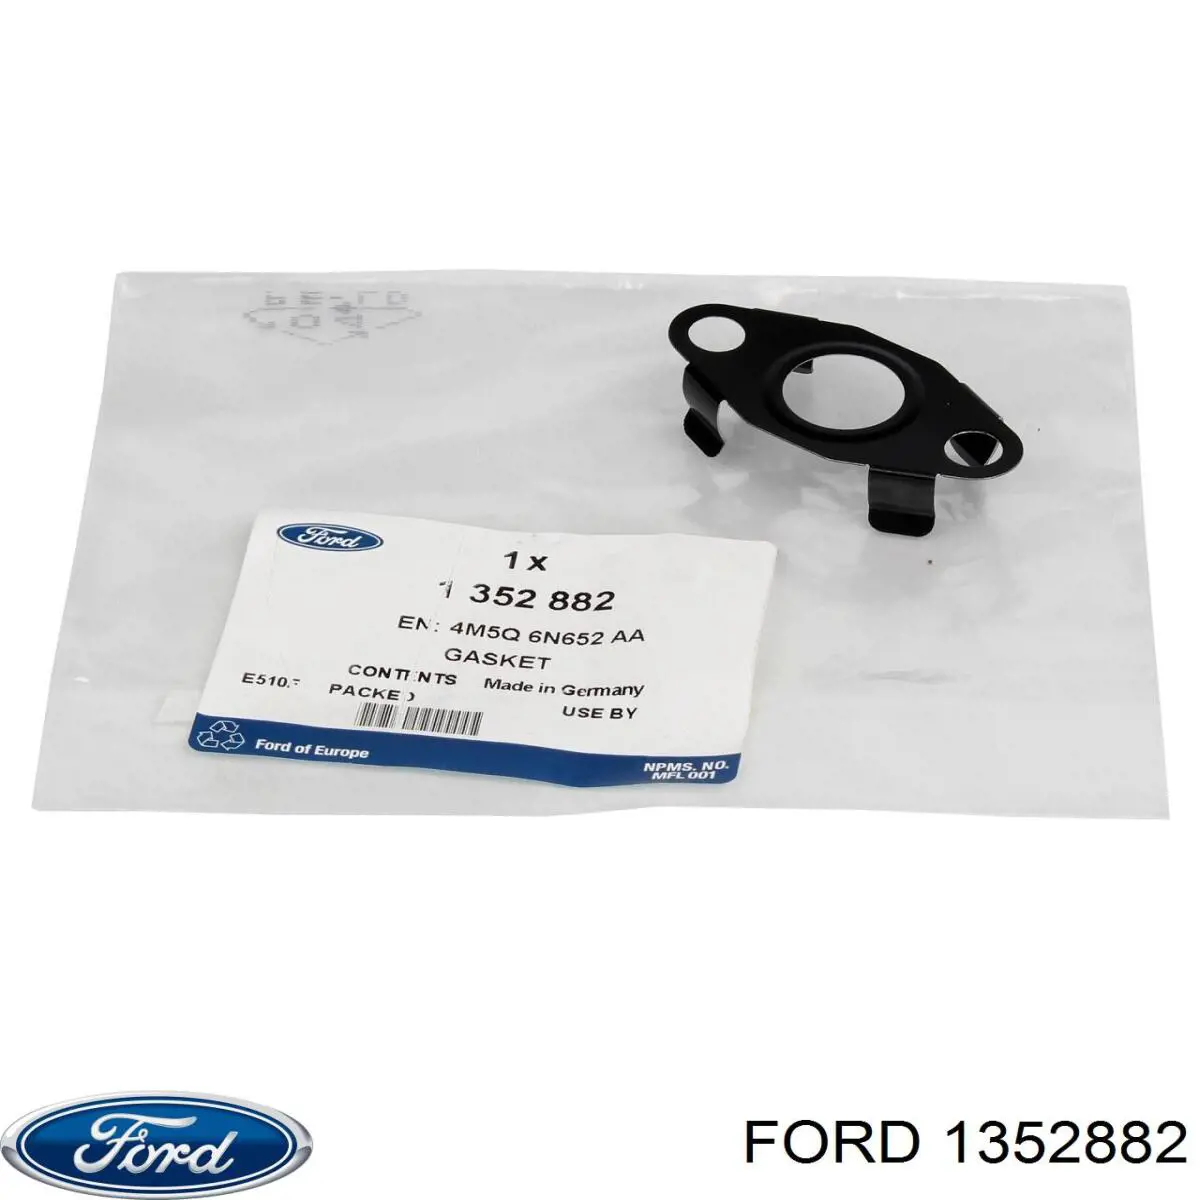 1352882 Ford прокладка шланга отвода масла от турбины